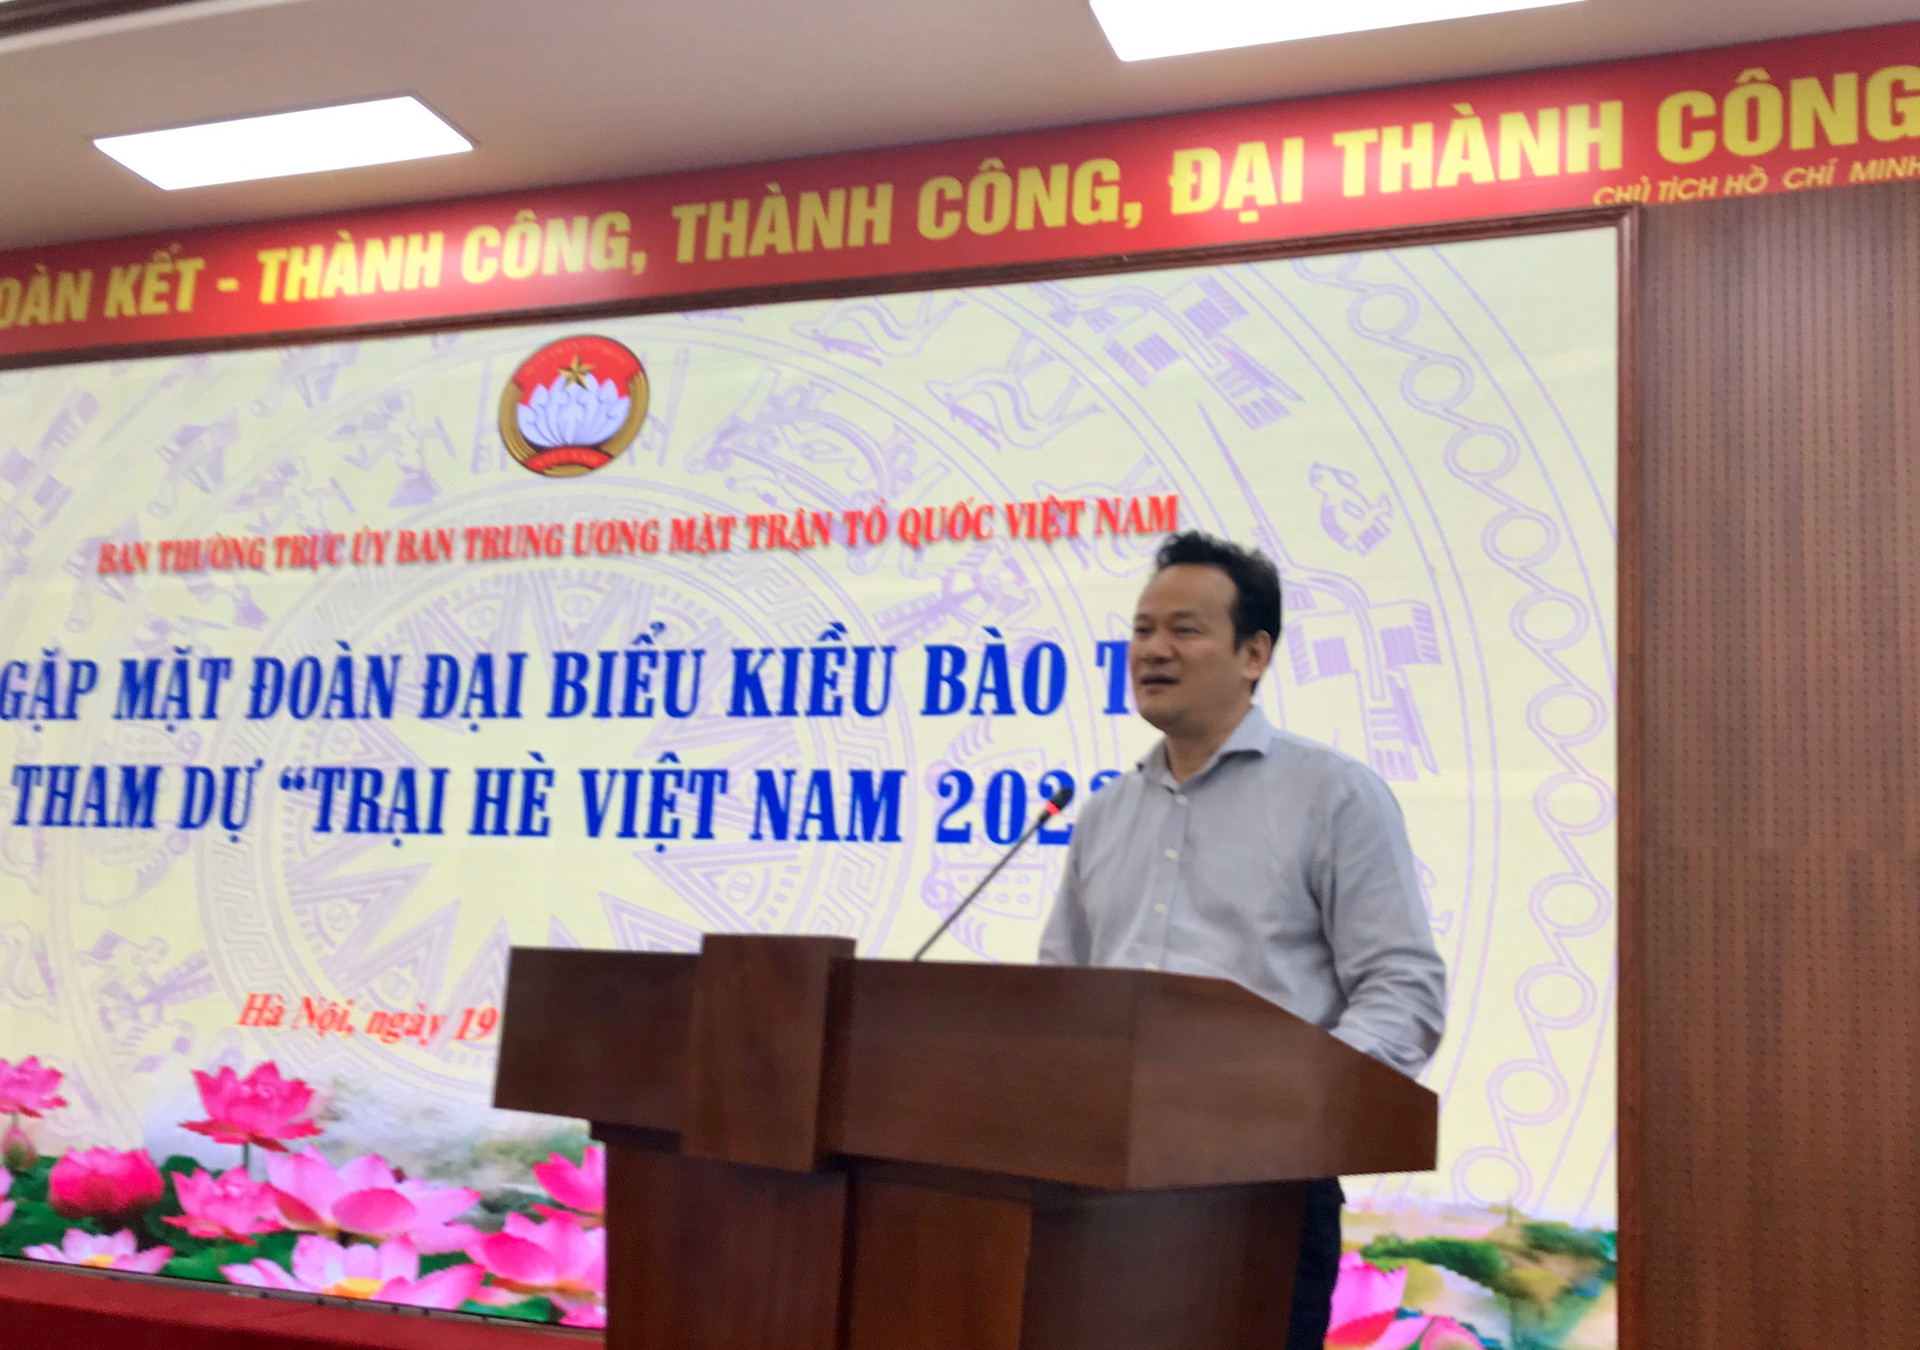 Trại hè Việt Nam 2023: Vinh danh các thanh niên kiều bào tiêu biểu - ảnh 3